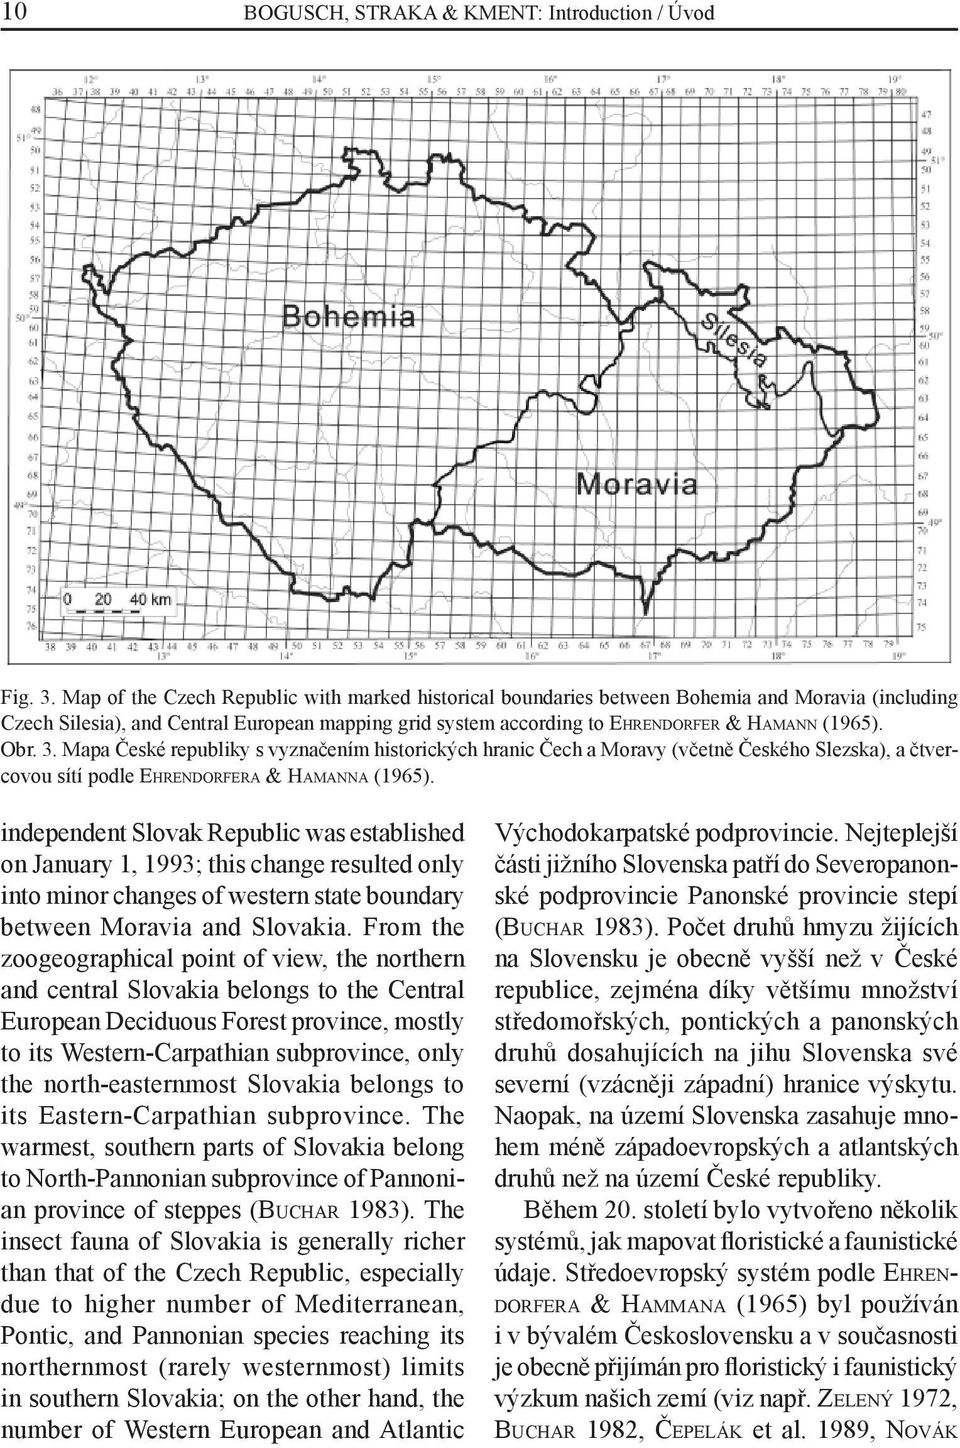 Obr. 3. Mapa České republiky s vyznačením historických hranic Čech a Moravy (včetně Českého Slezska), a čtvercovou sítí podle EHRENDORFERA & HAMANNA (1965).